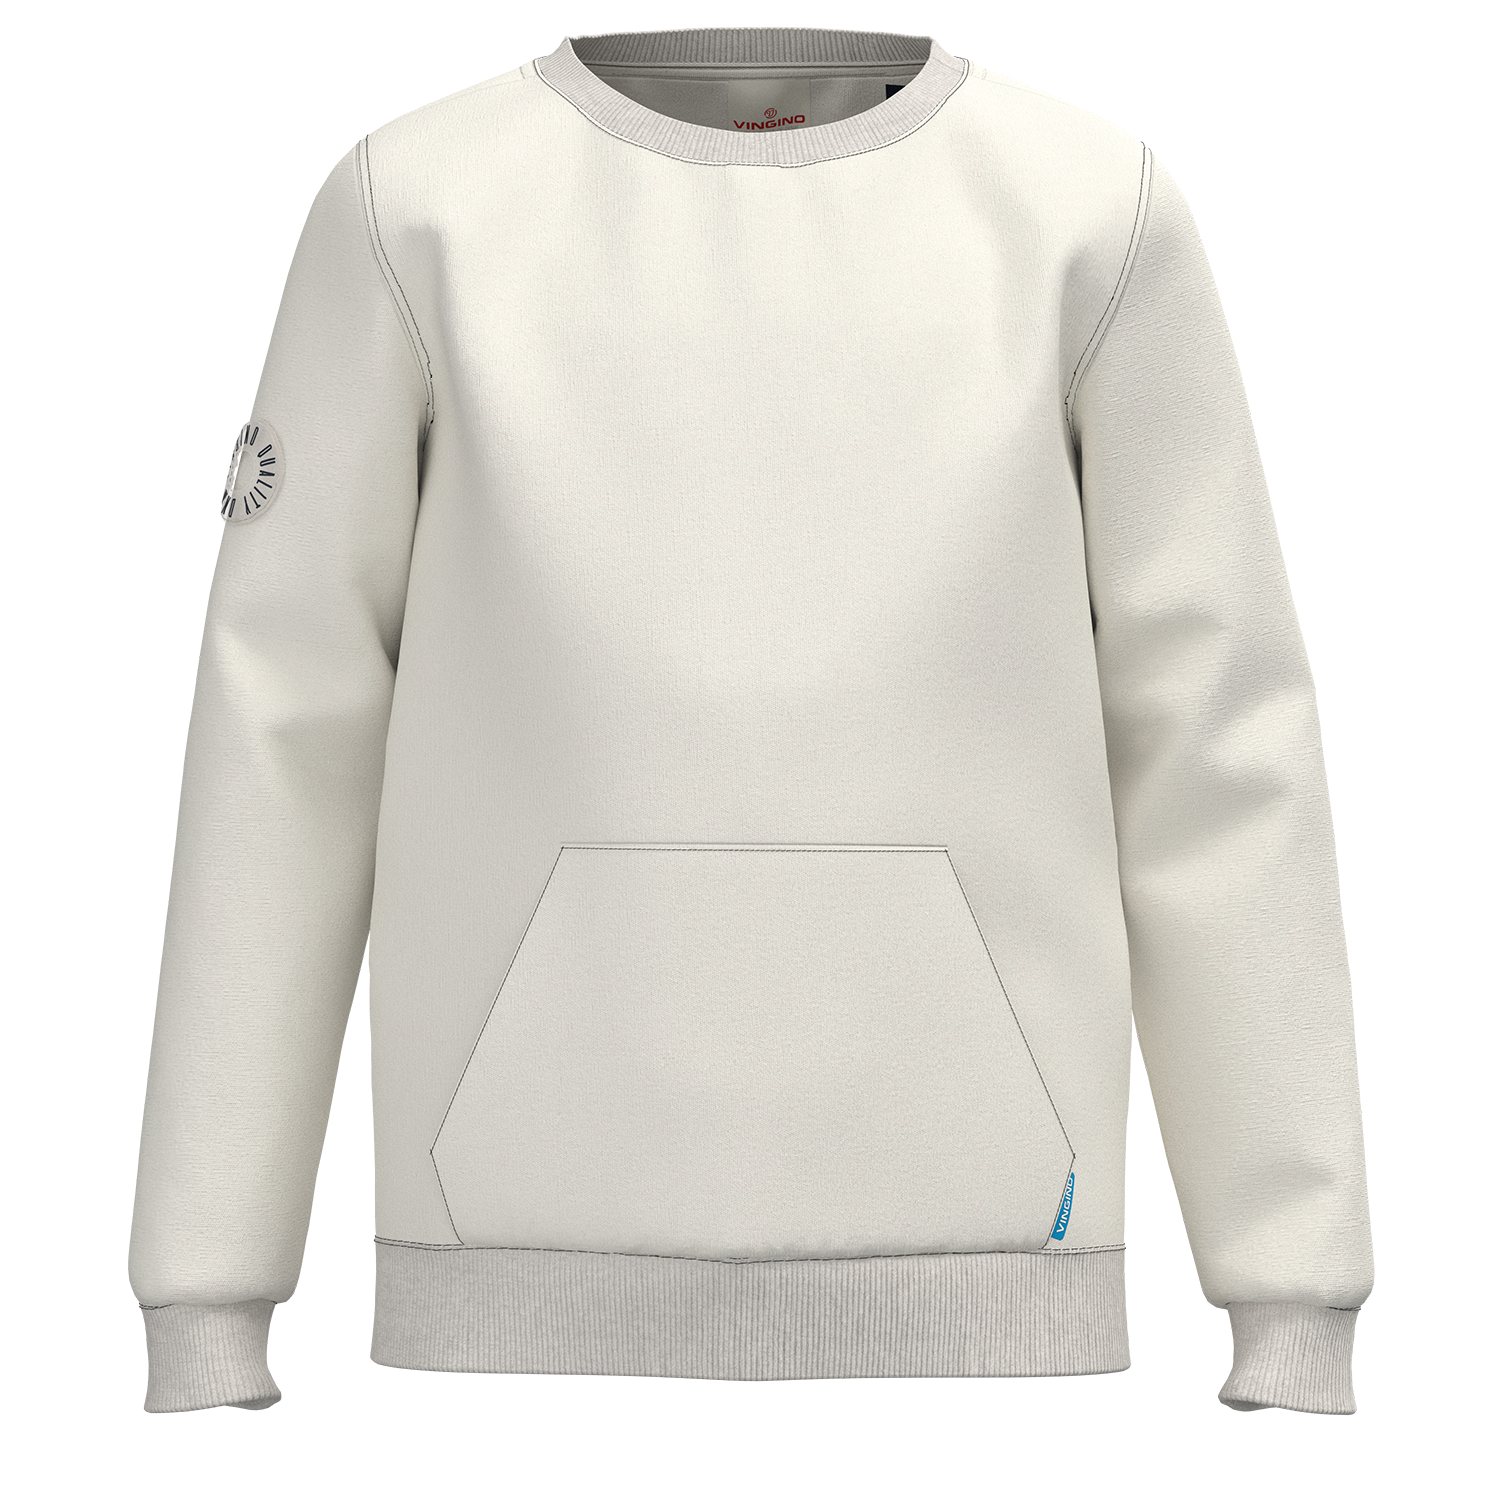 VN9221 Trui / Sweater NOCKET